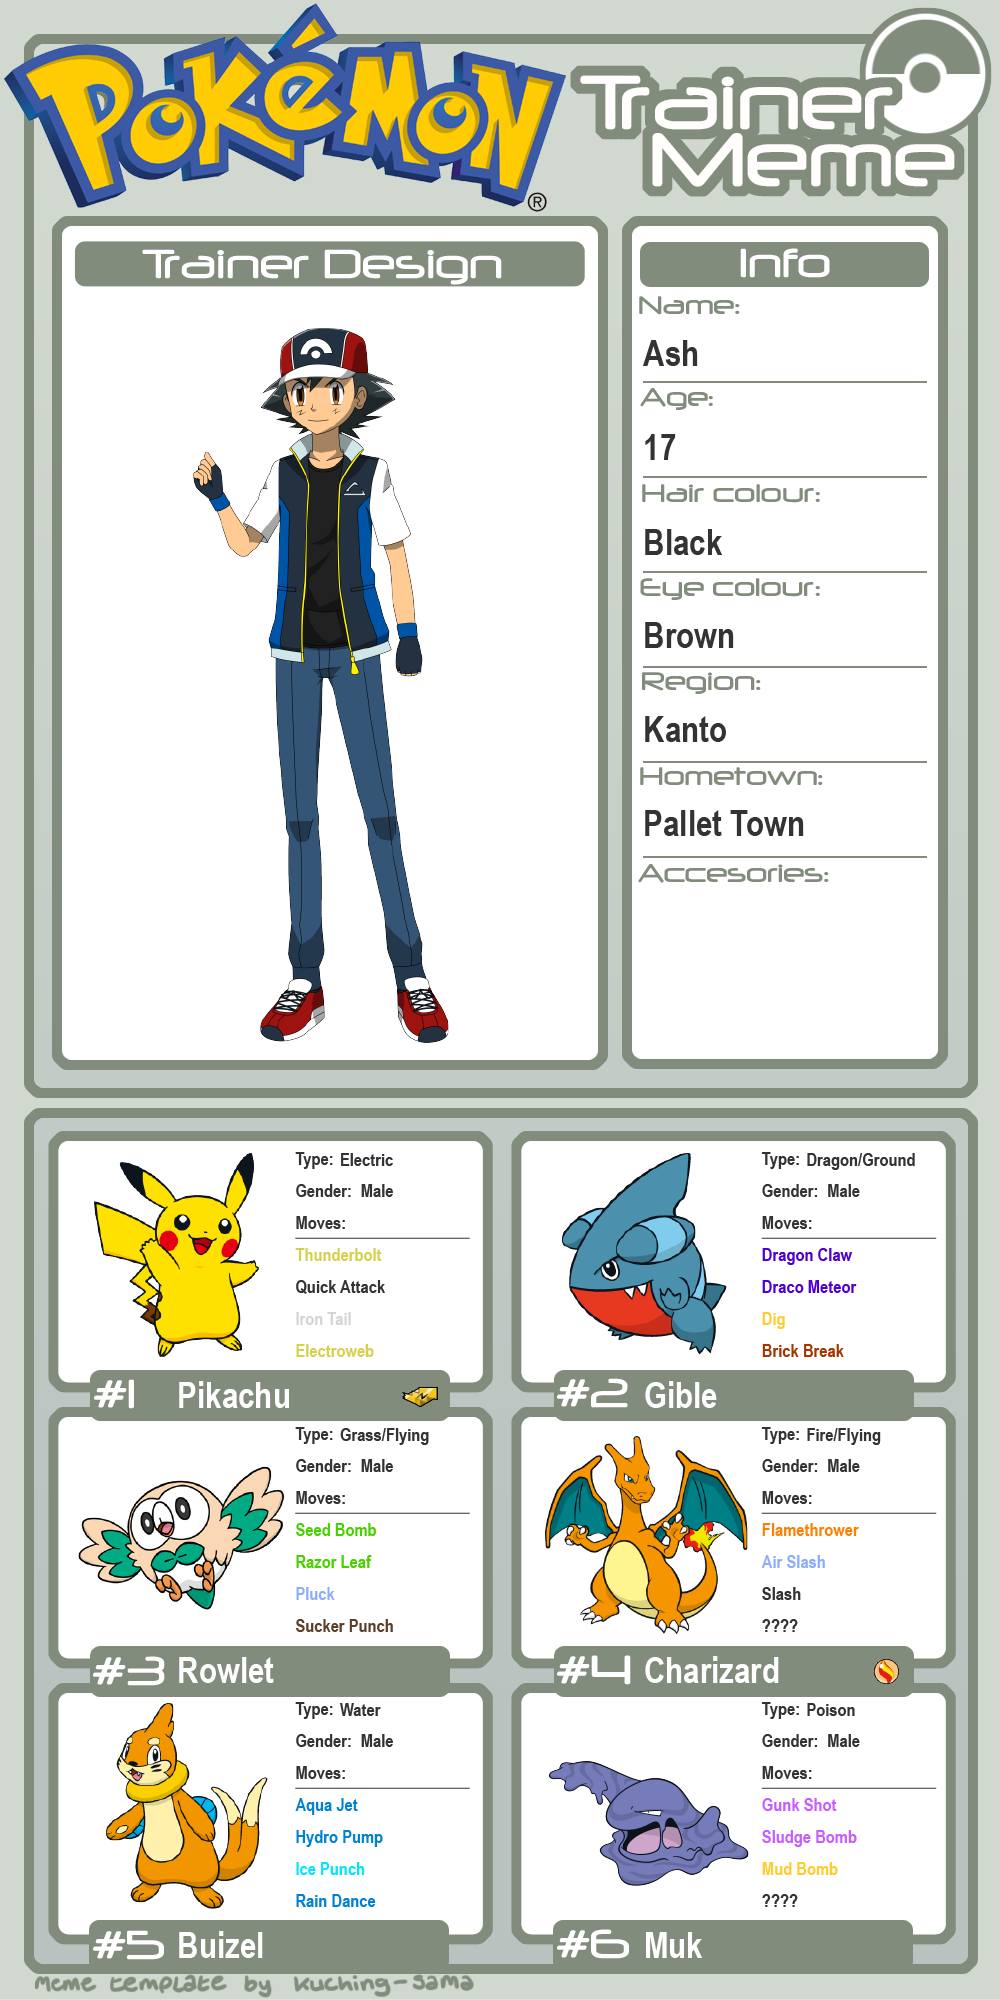 Dawn Pokemon Team (My Version) by SapphireZX on DeviantArt